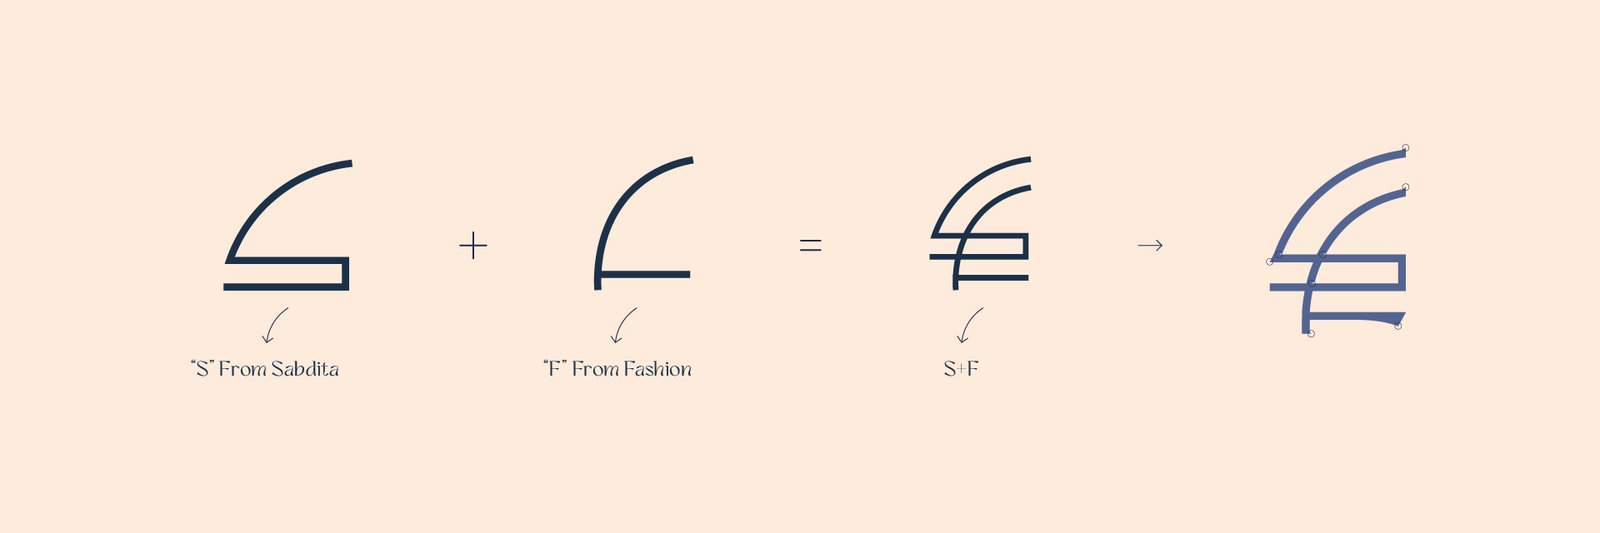 Sabdita Fashion logo scale meaning